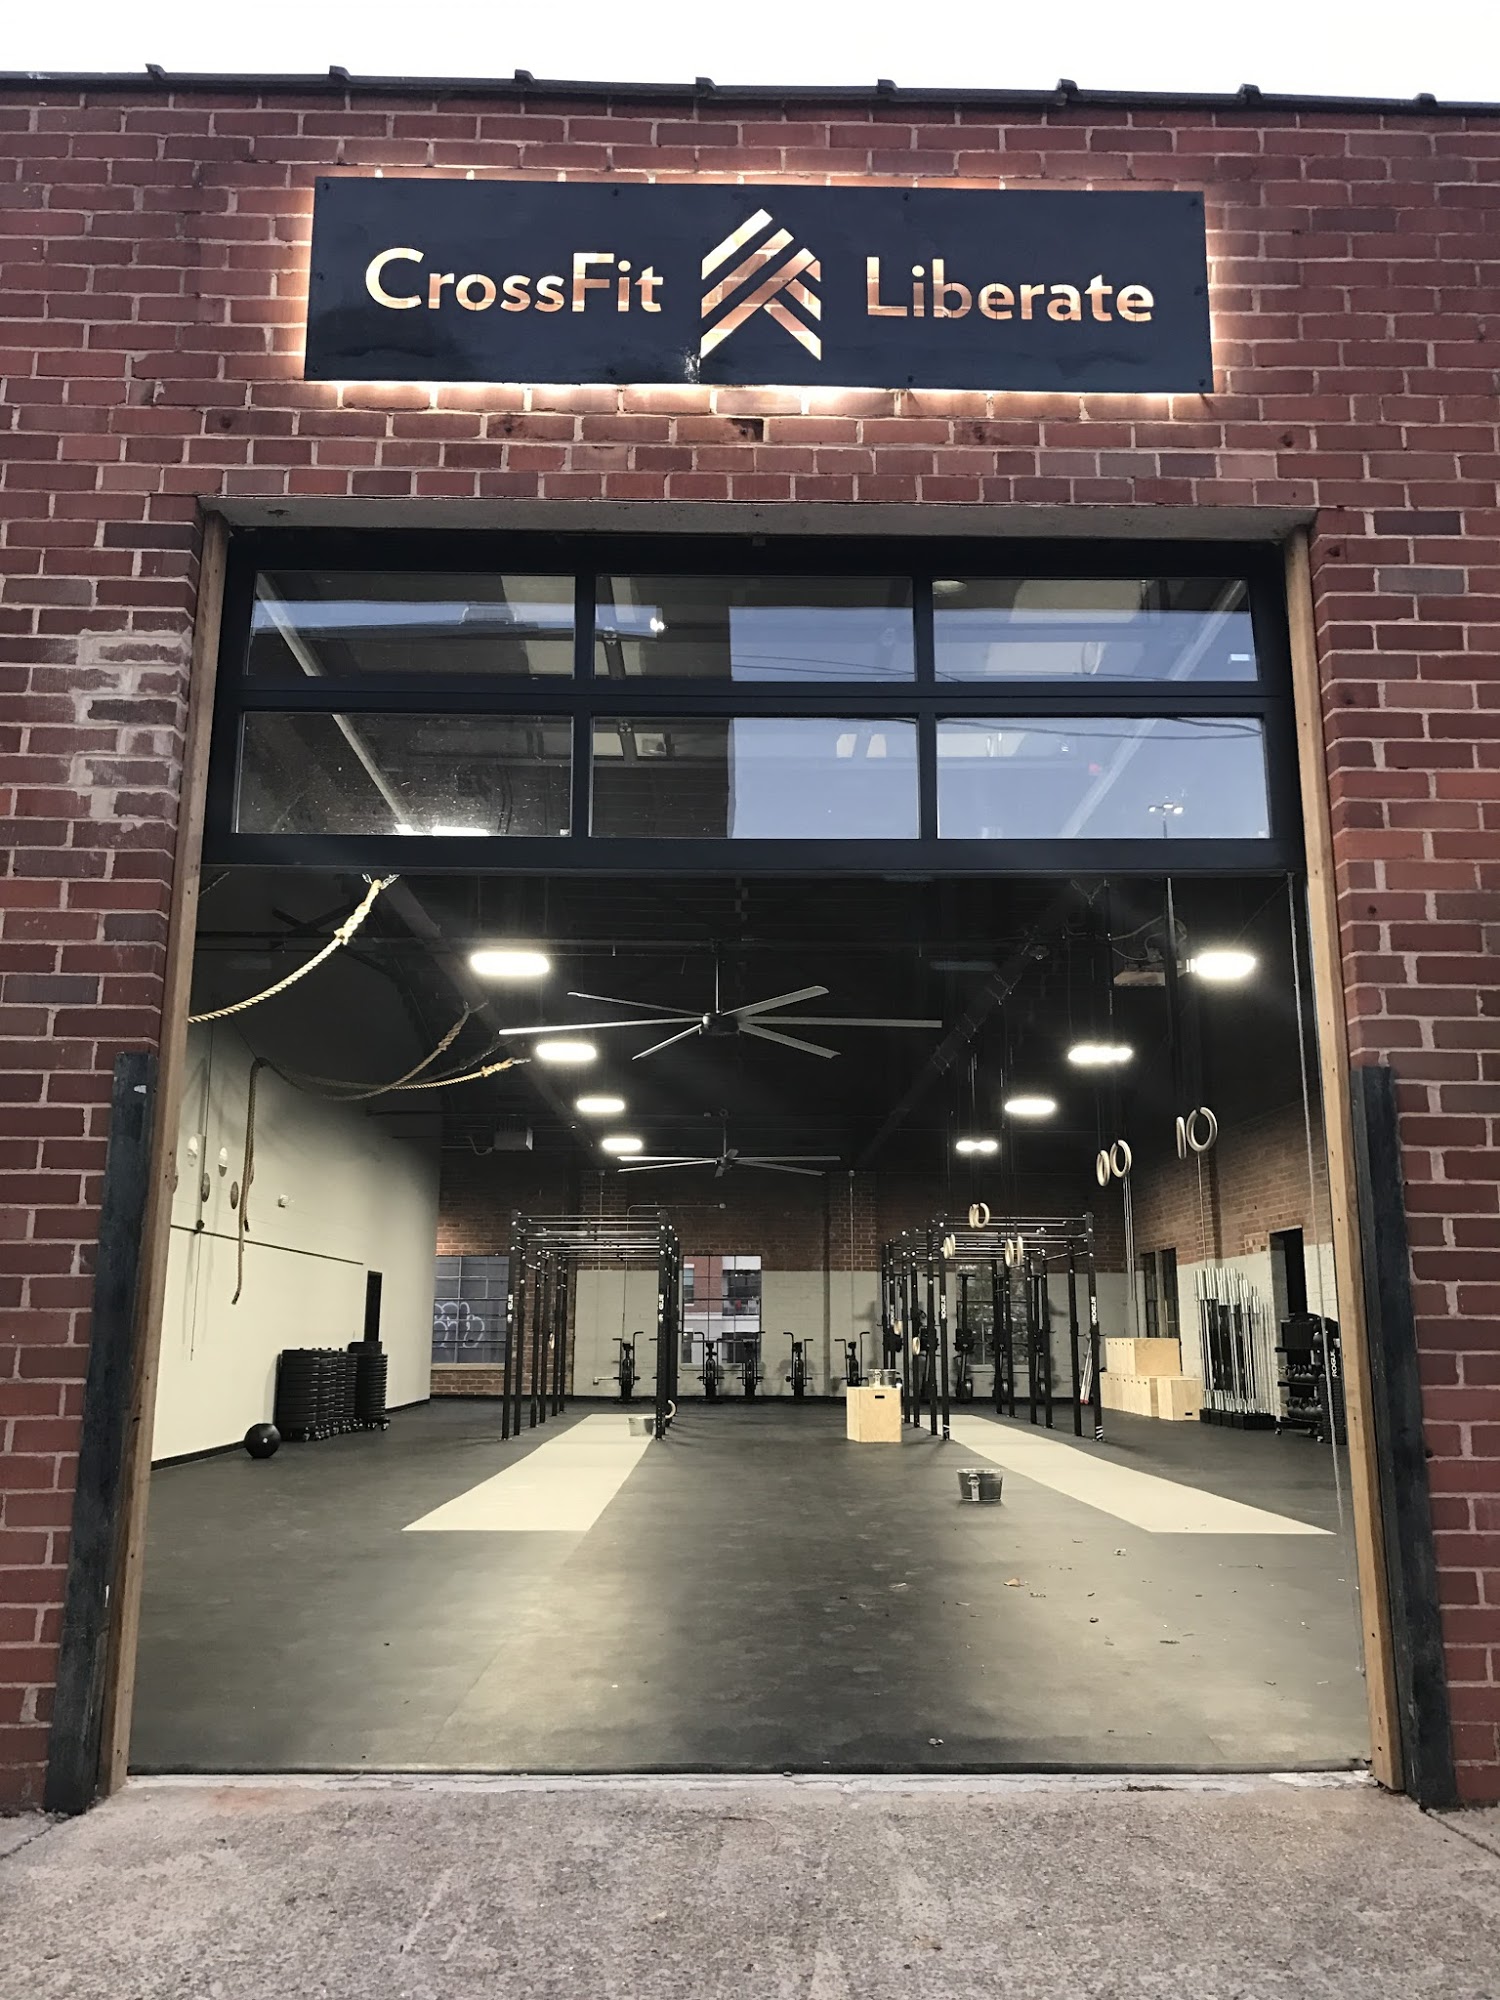 CrossFit Liberate